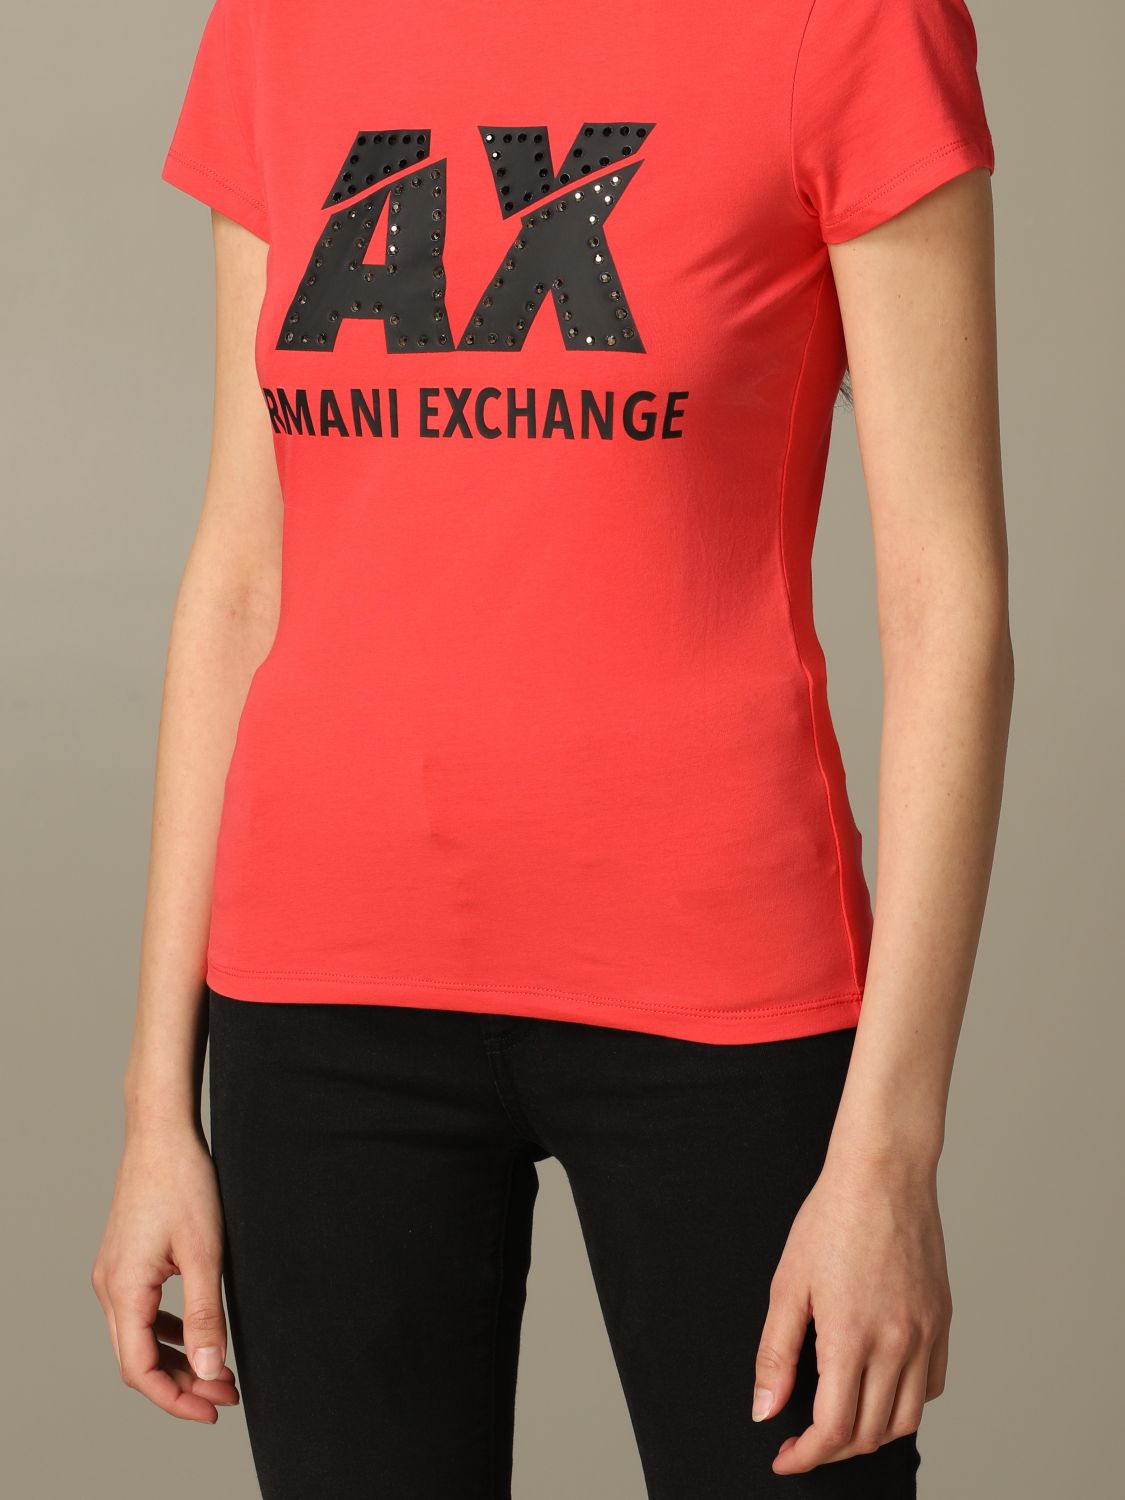 orange armani exchange t shirt